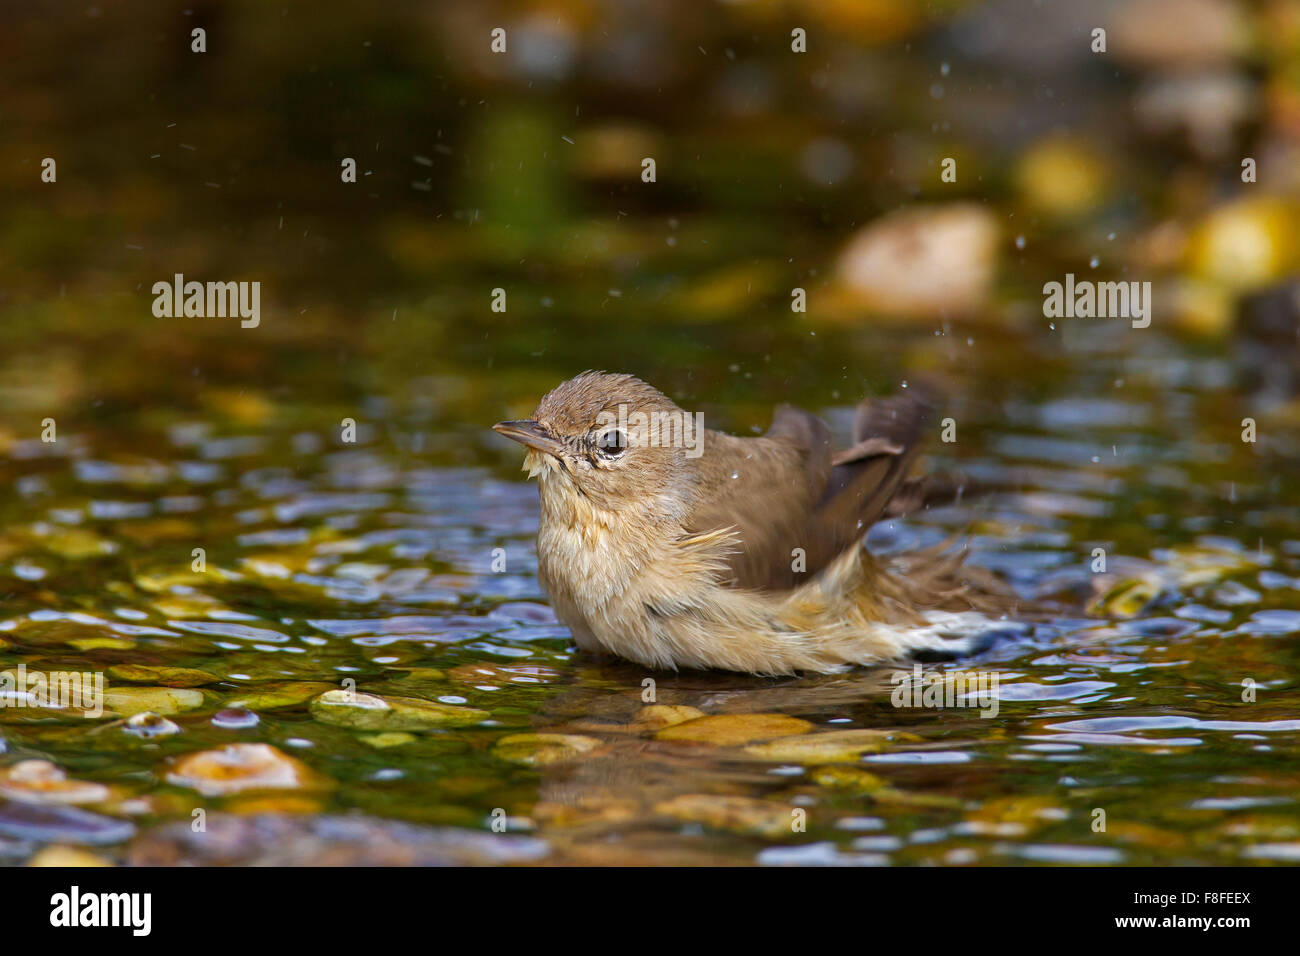 Garden warbler (Sylvia borin) bathing in shallow water Stock Photo